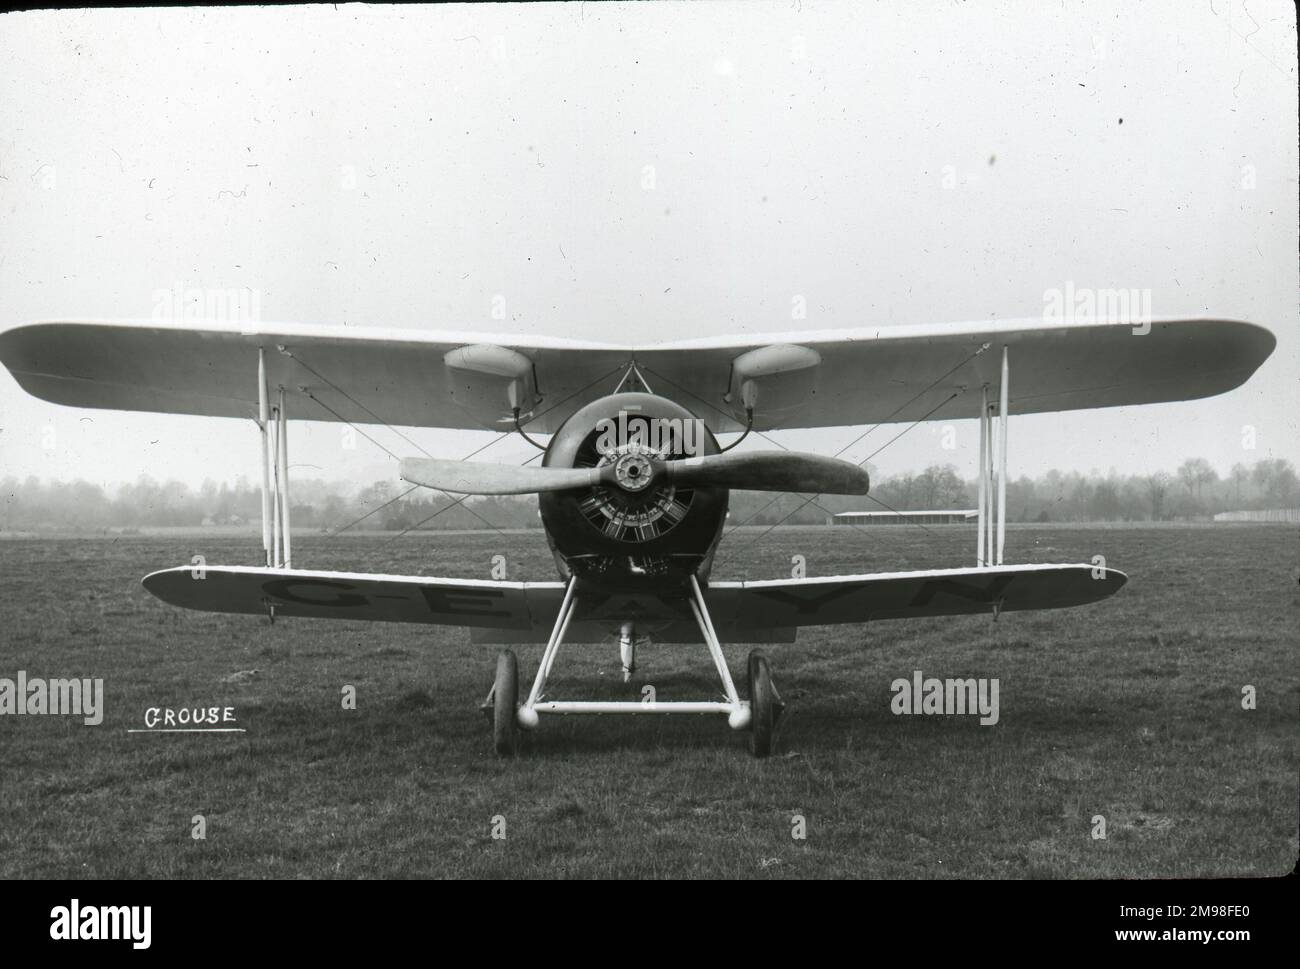 Gloster Grouse I, G-EAYN. Stockfoto